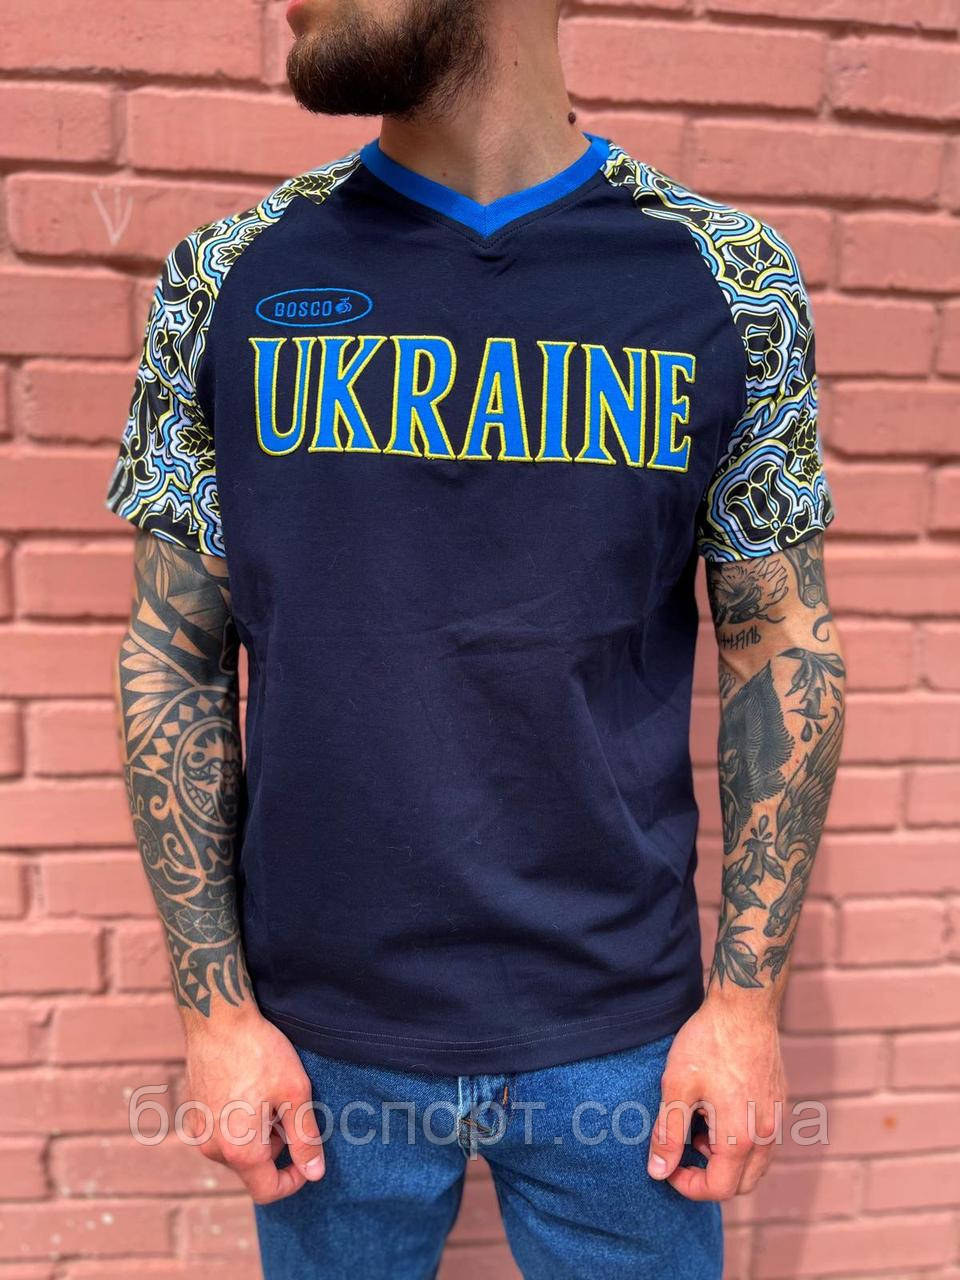 Чоловіча футболка Bosco Sport ua чорна з Україною спереду Італія🇮🇹 S М L XL